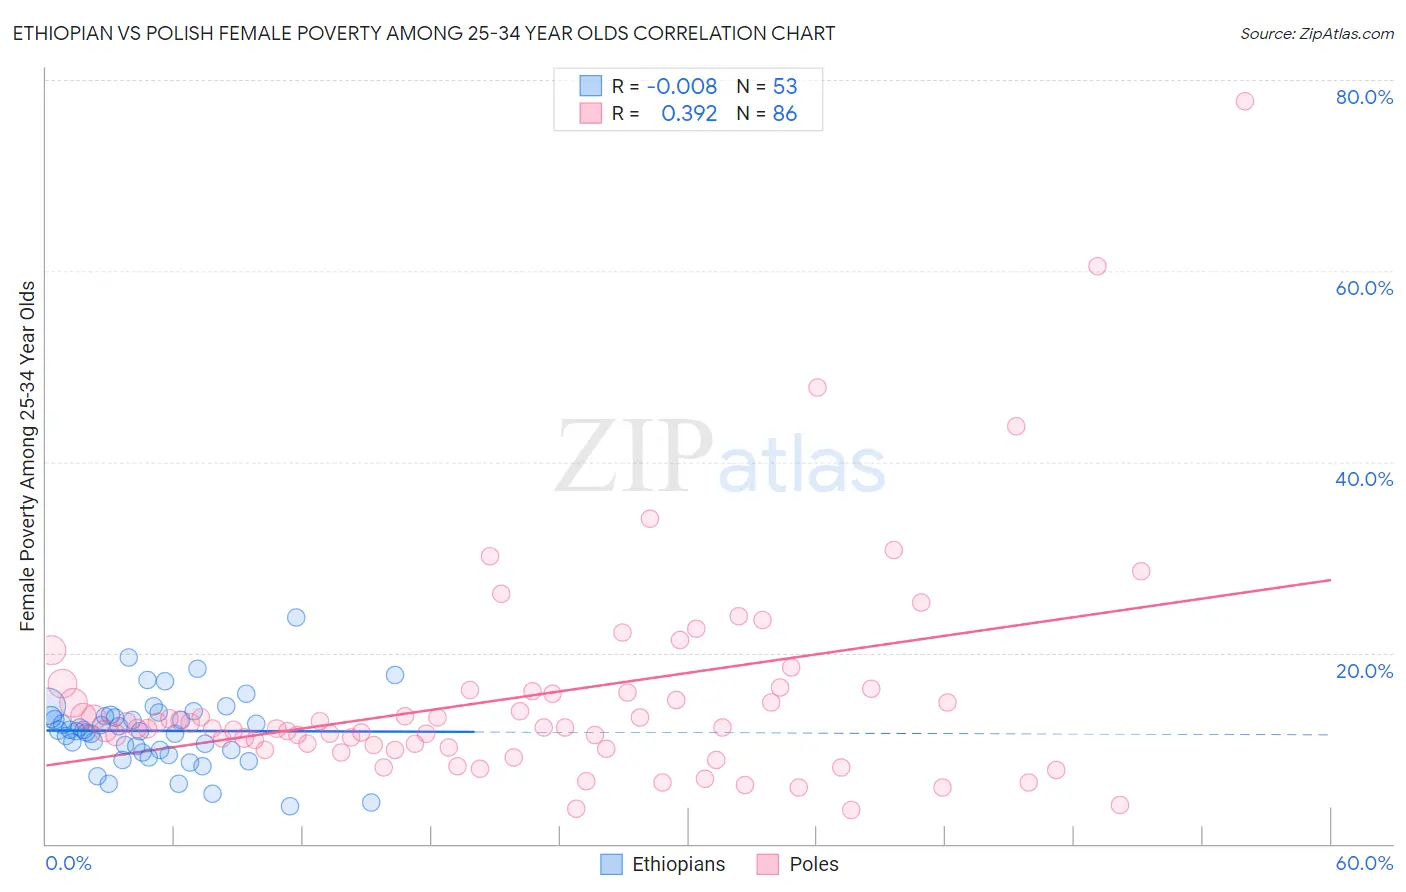 Ethiopian vs Polish Female Poverty Among 25-34 Year Olds